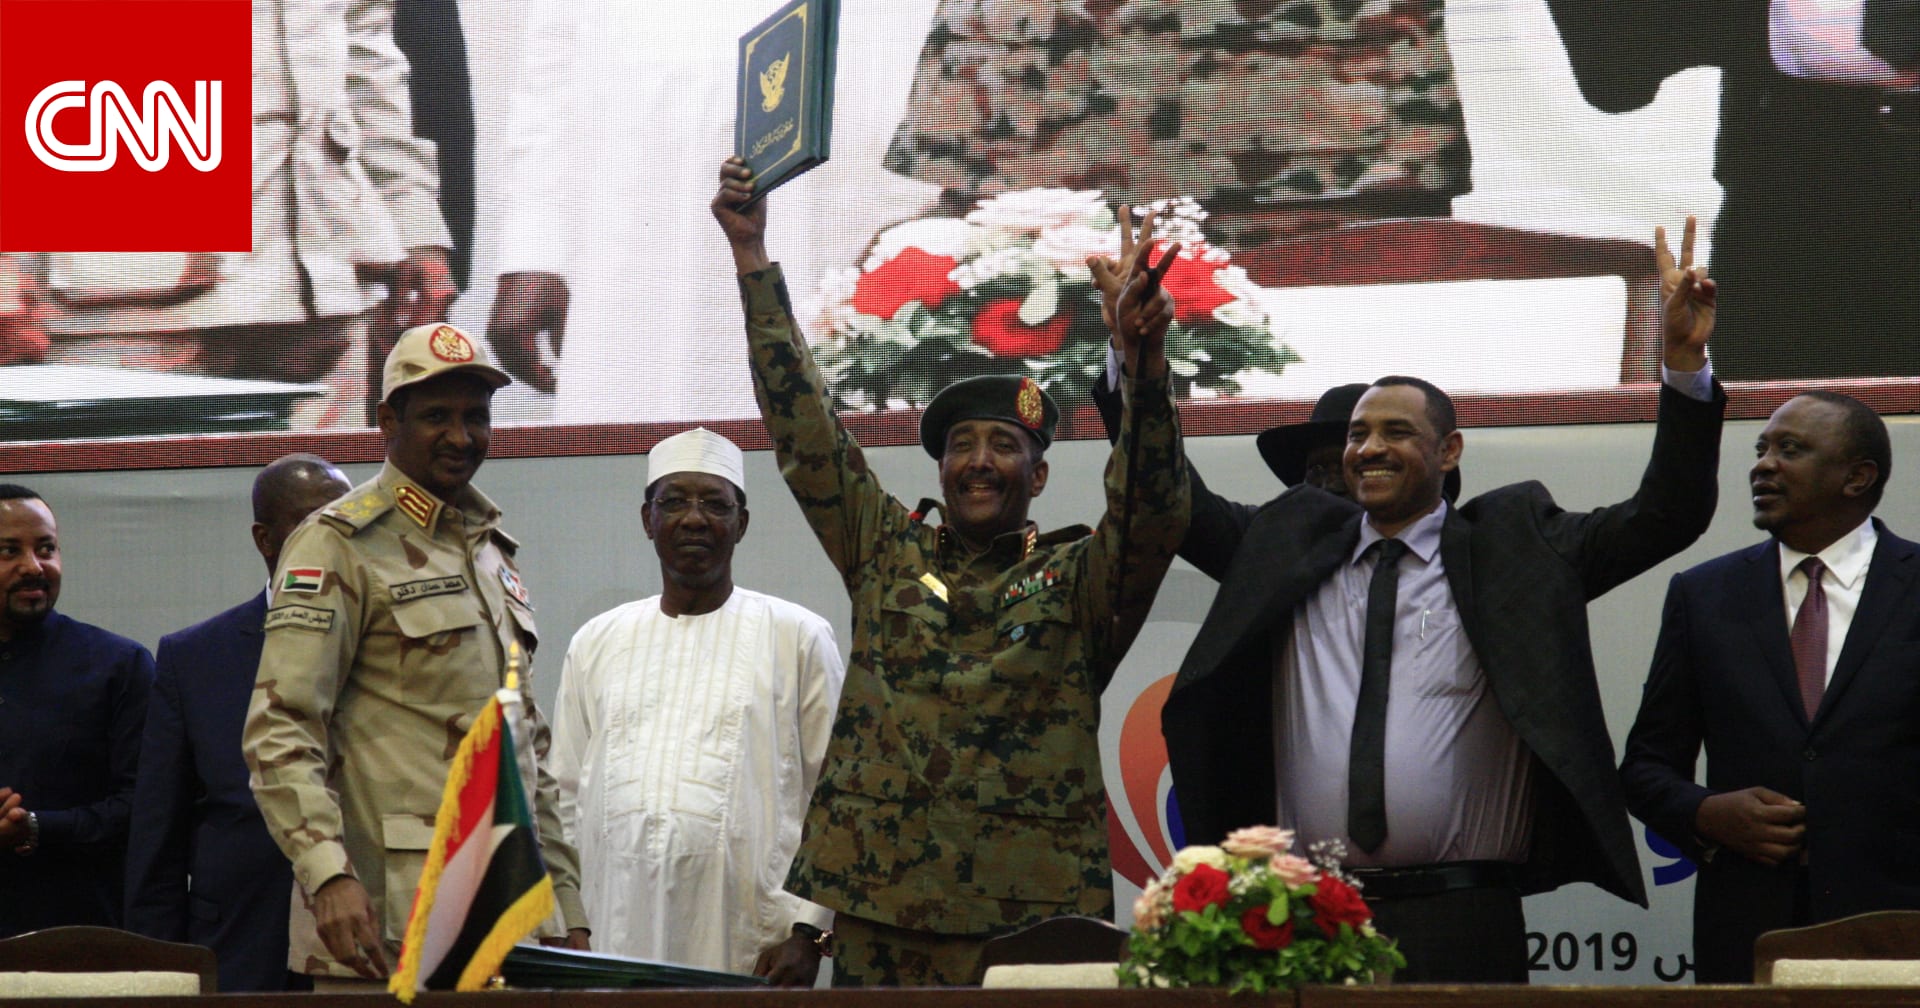 المجلس العسكري السوداني يؤجل حل نفسه ويمنح المعارضة مهلة 48 ساعة للتوافق - CNN Arabic